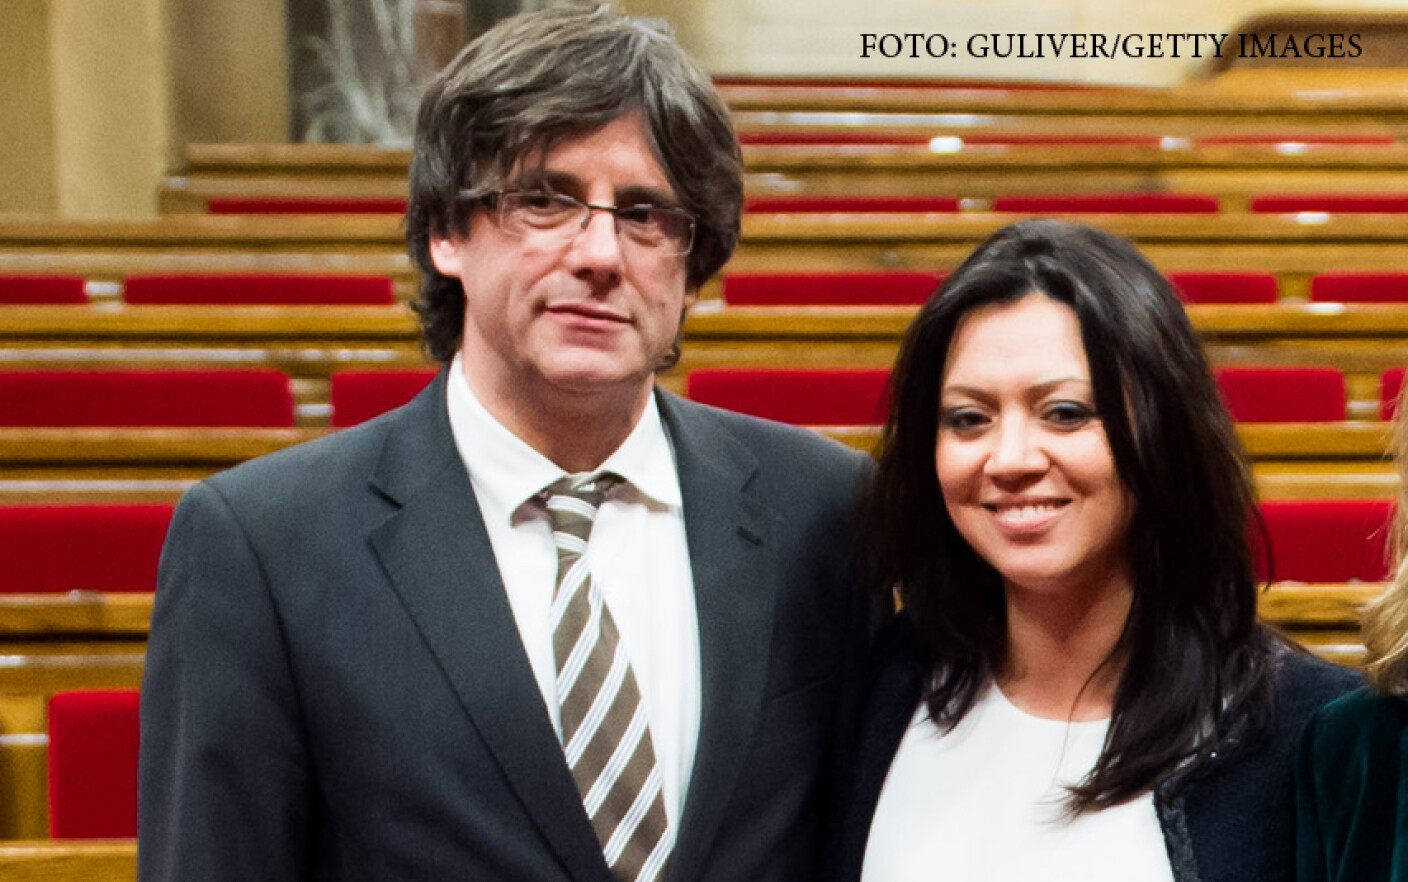 Marcela Topor, sotia sefului executivului catalan, si sotul ei Carles Puigdemont